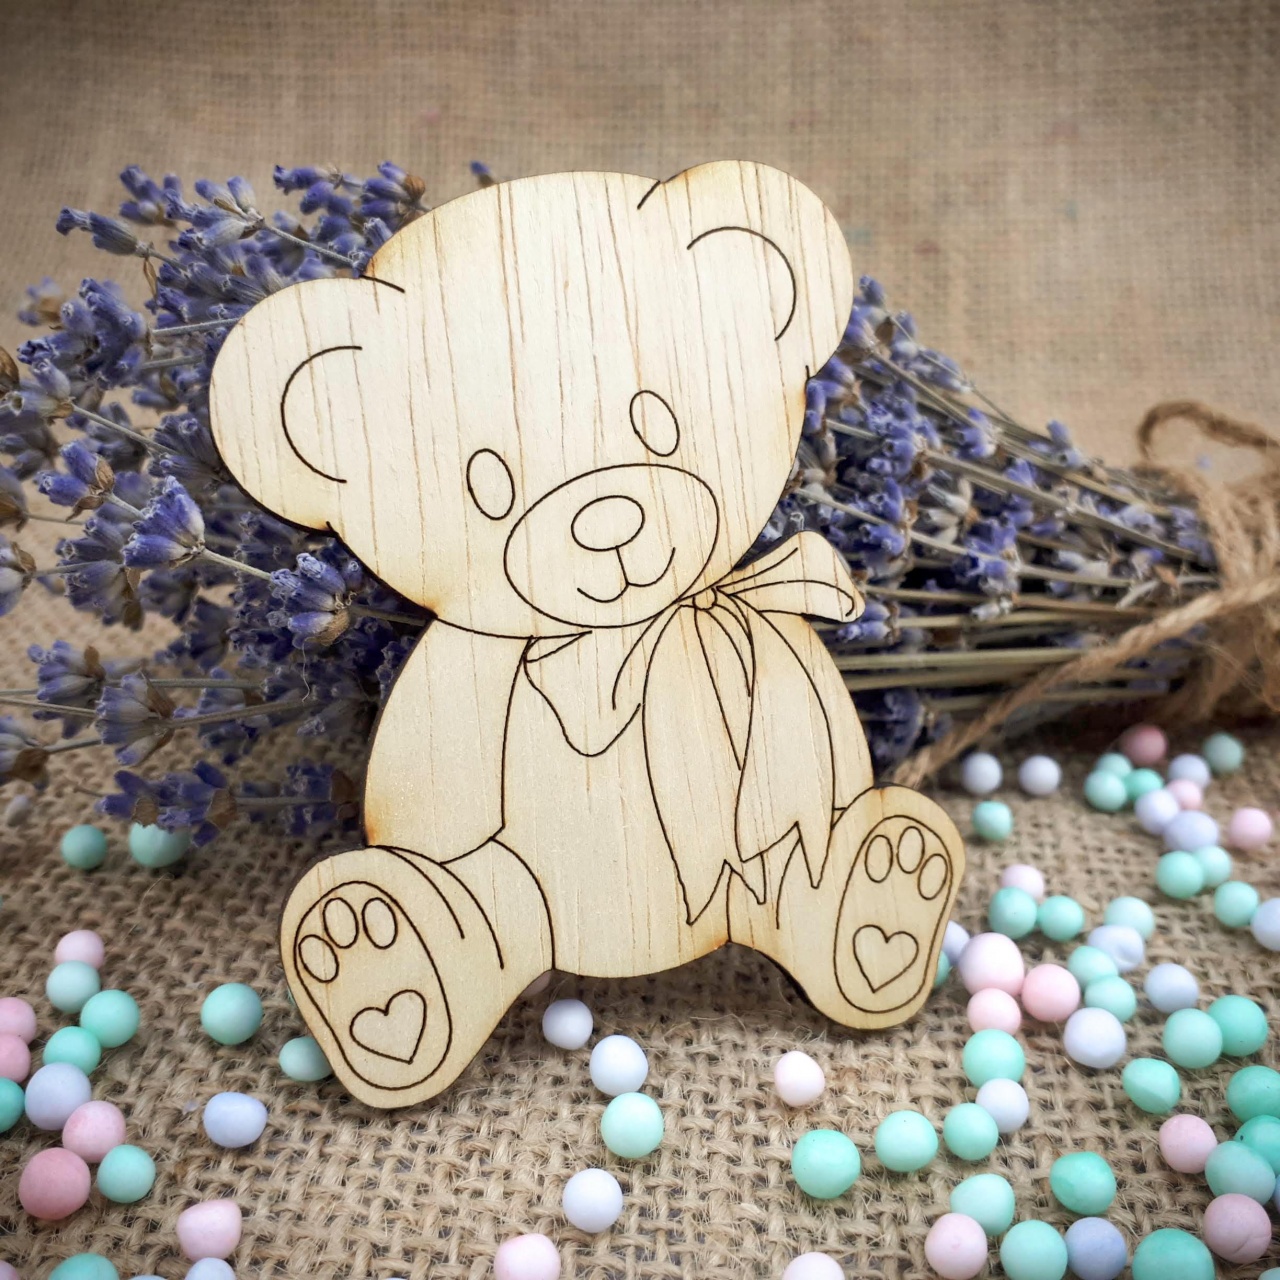 Ursuleț Teddy cu bază, 8×10 cm, placaj lemn